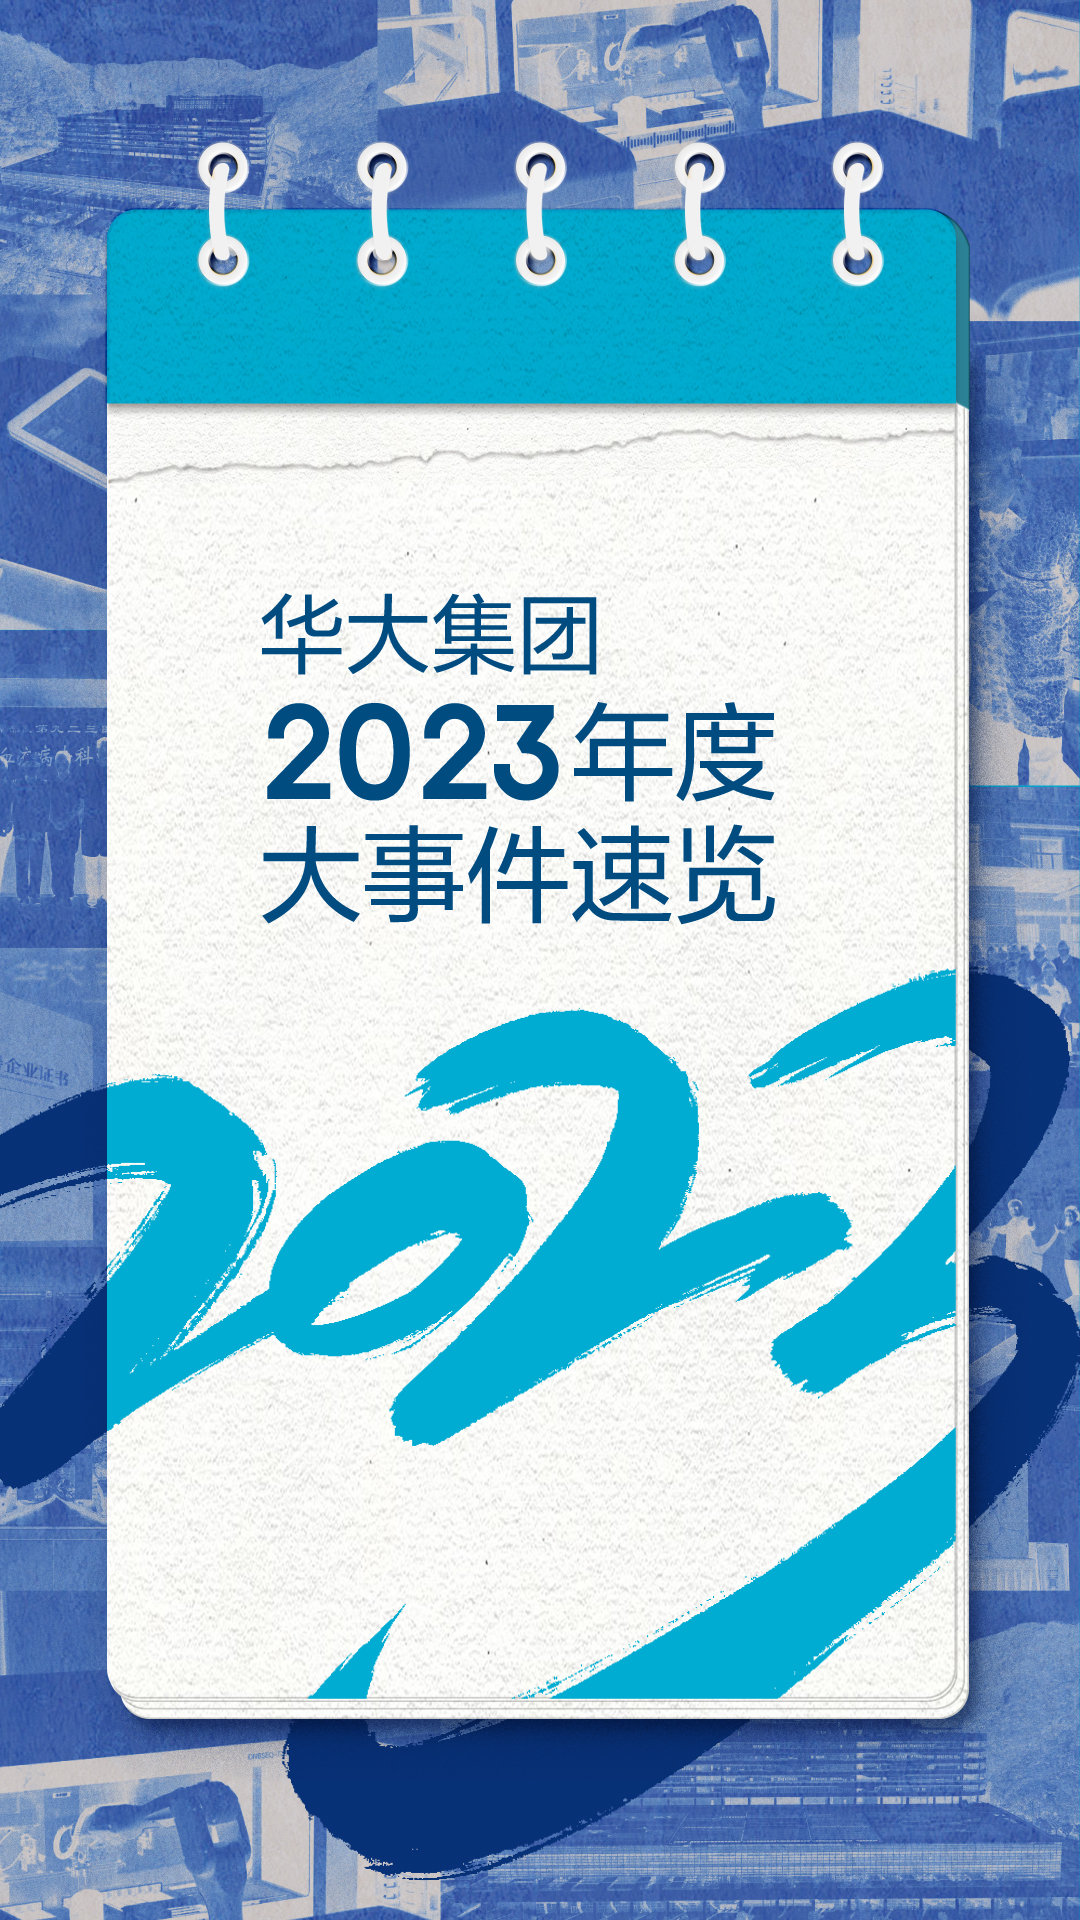 2023华大总结推文-单图版本-01.jpg